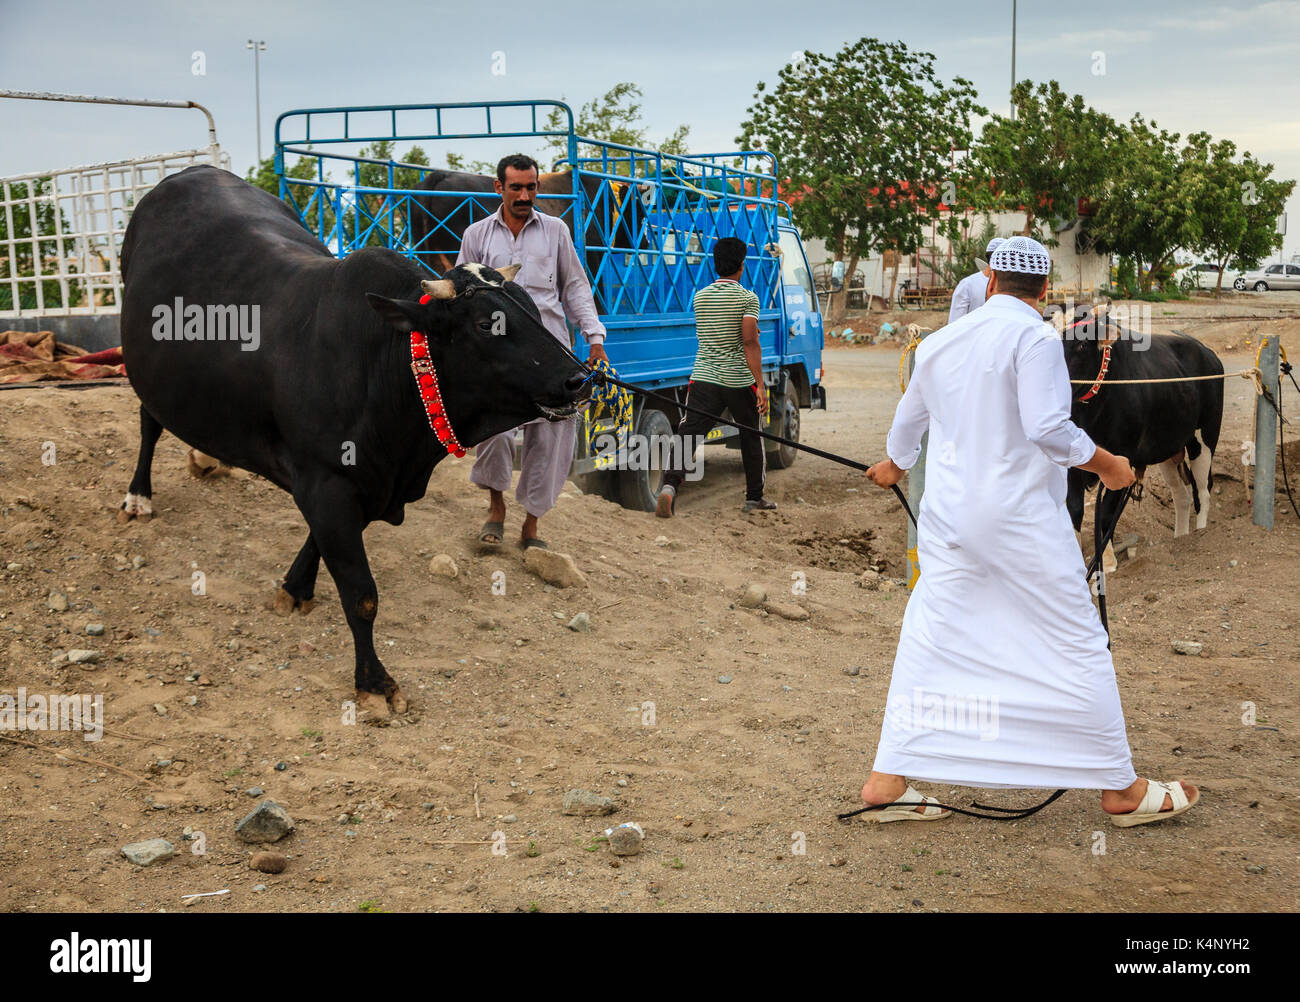 Fujairah, UAE, 1 aprile 2016: persone locali portano i tori per i tradizionali combattimenti di tori in Fujairah, Emirati arabi uniti Foto Stock